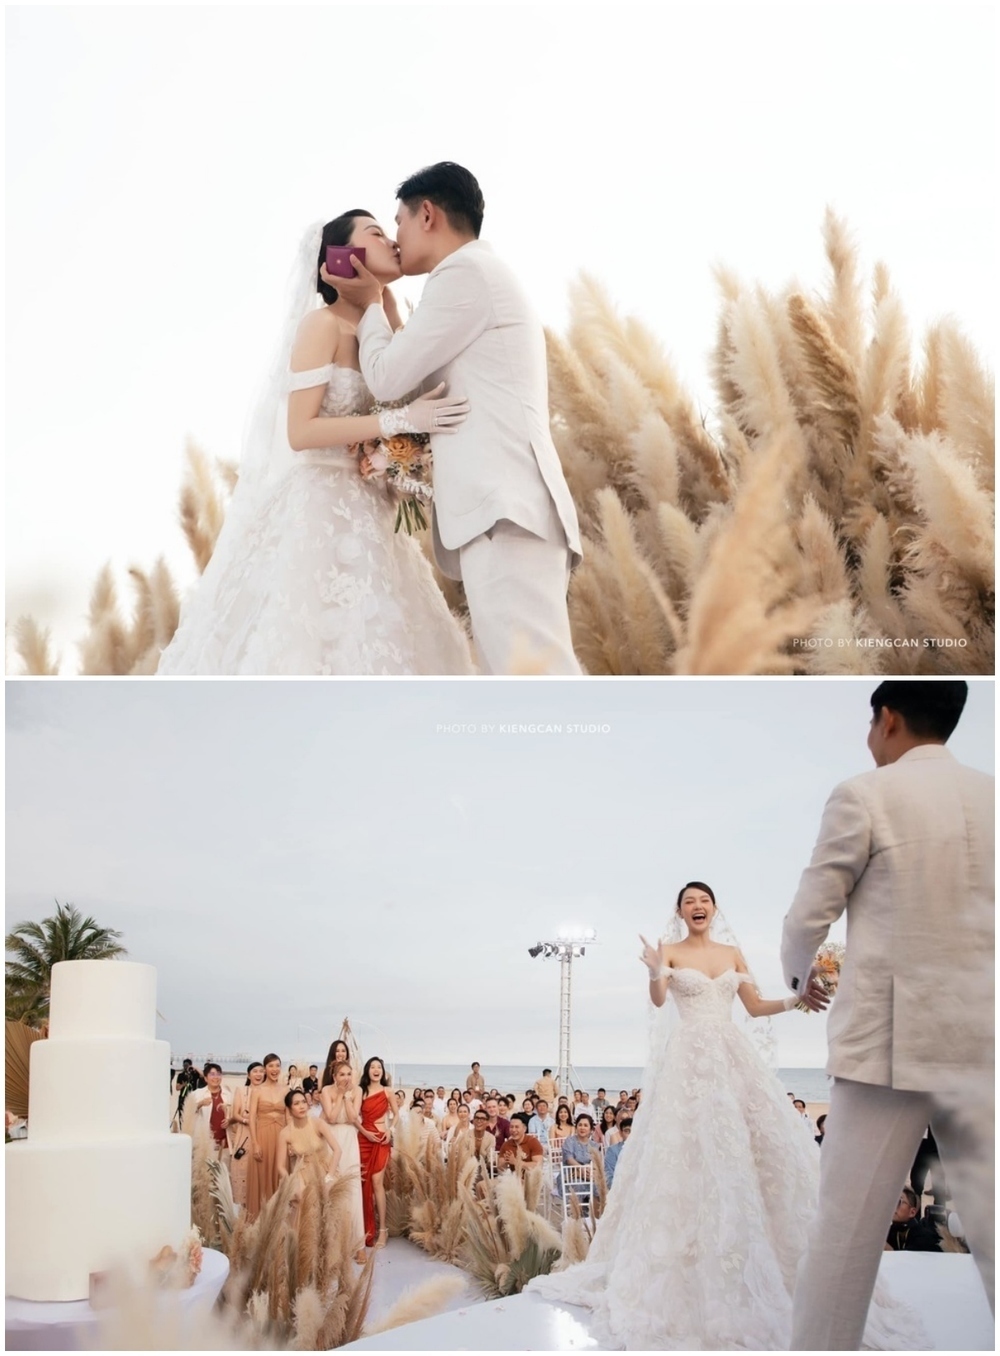  
Khoảnh khắc đẹp của Minh Hằng và chồng trong tiệc cưới trên bờ biển. (Ảnh: Team Kiếng Cận)